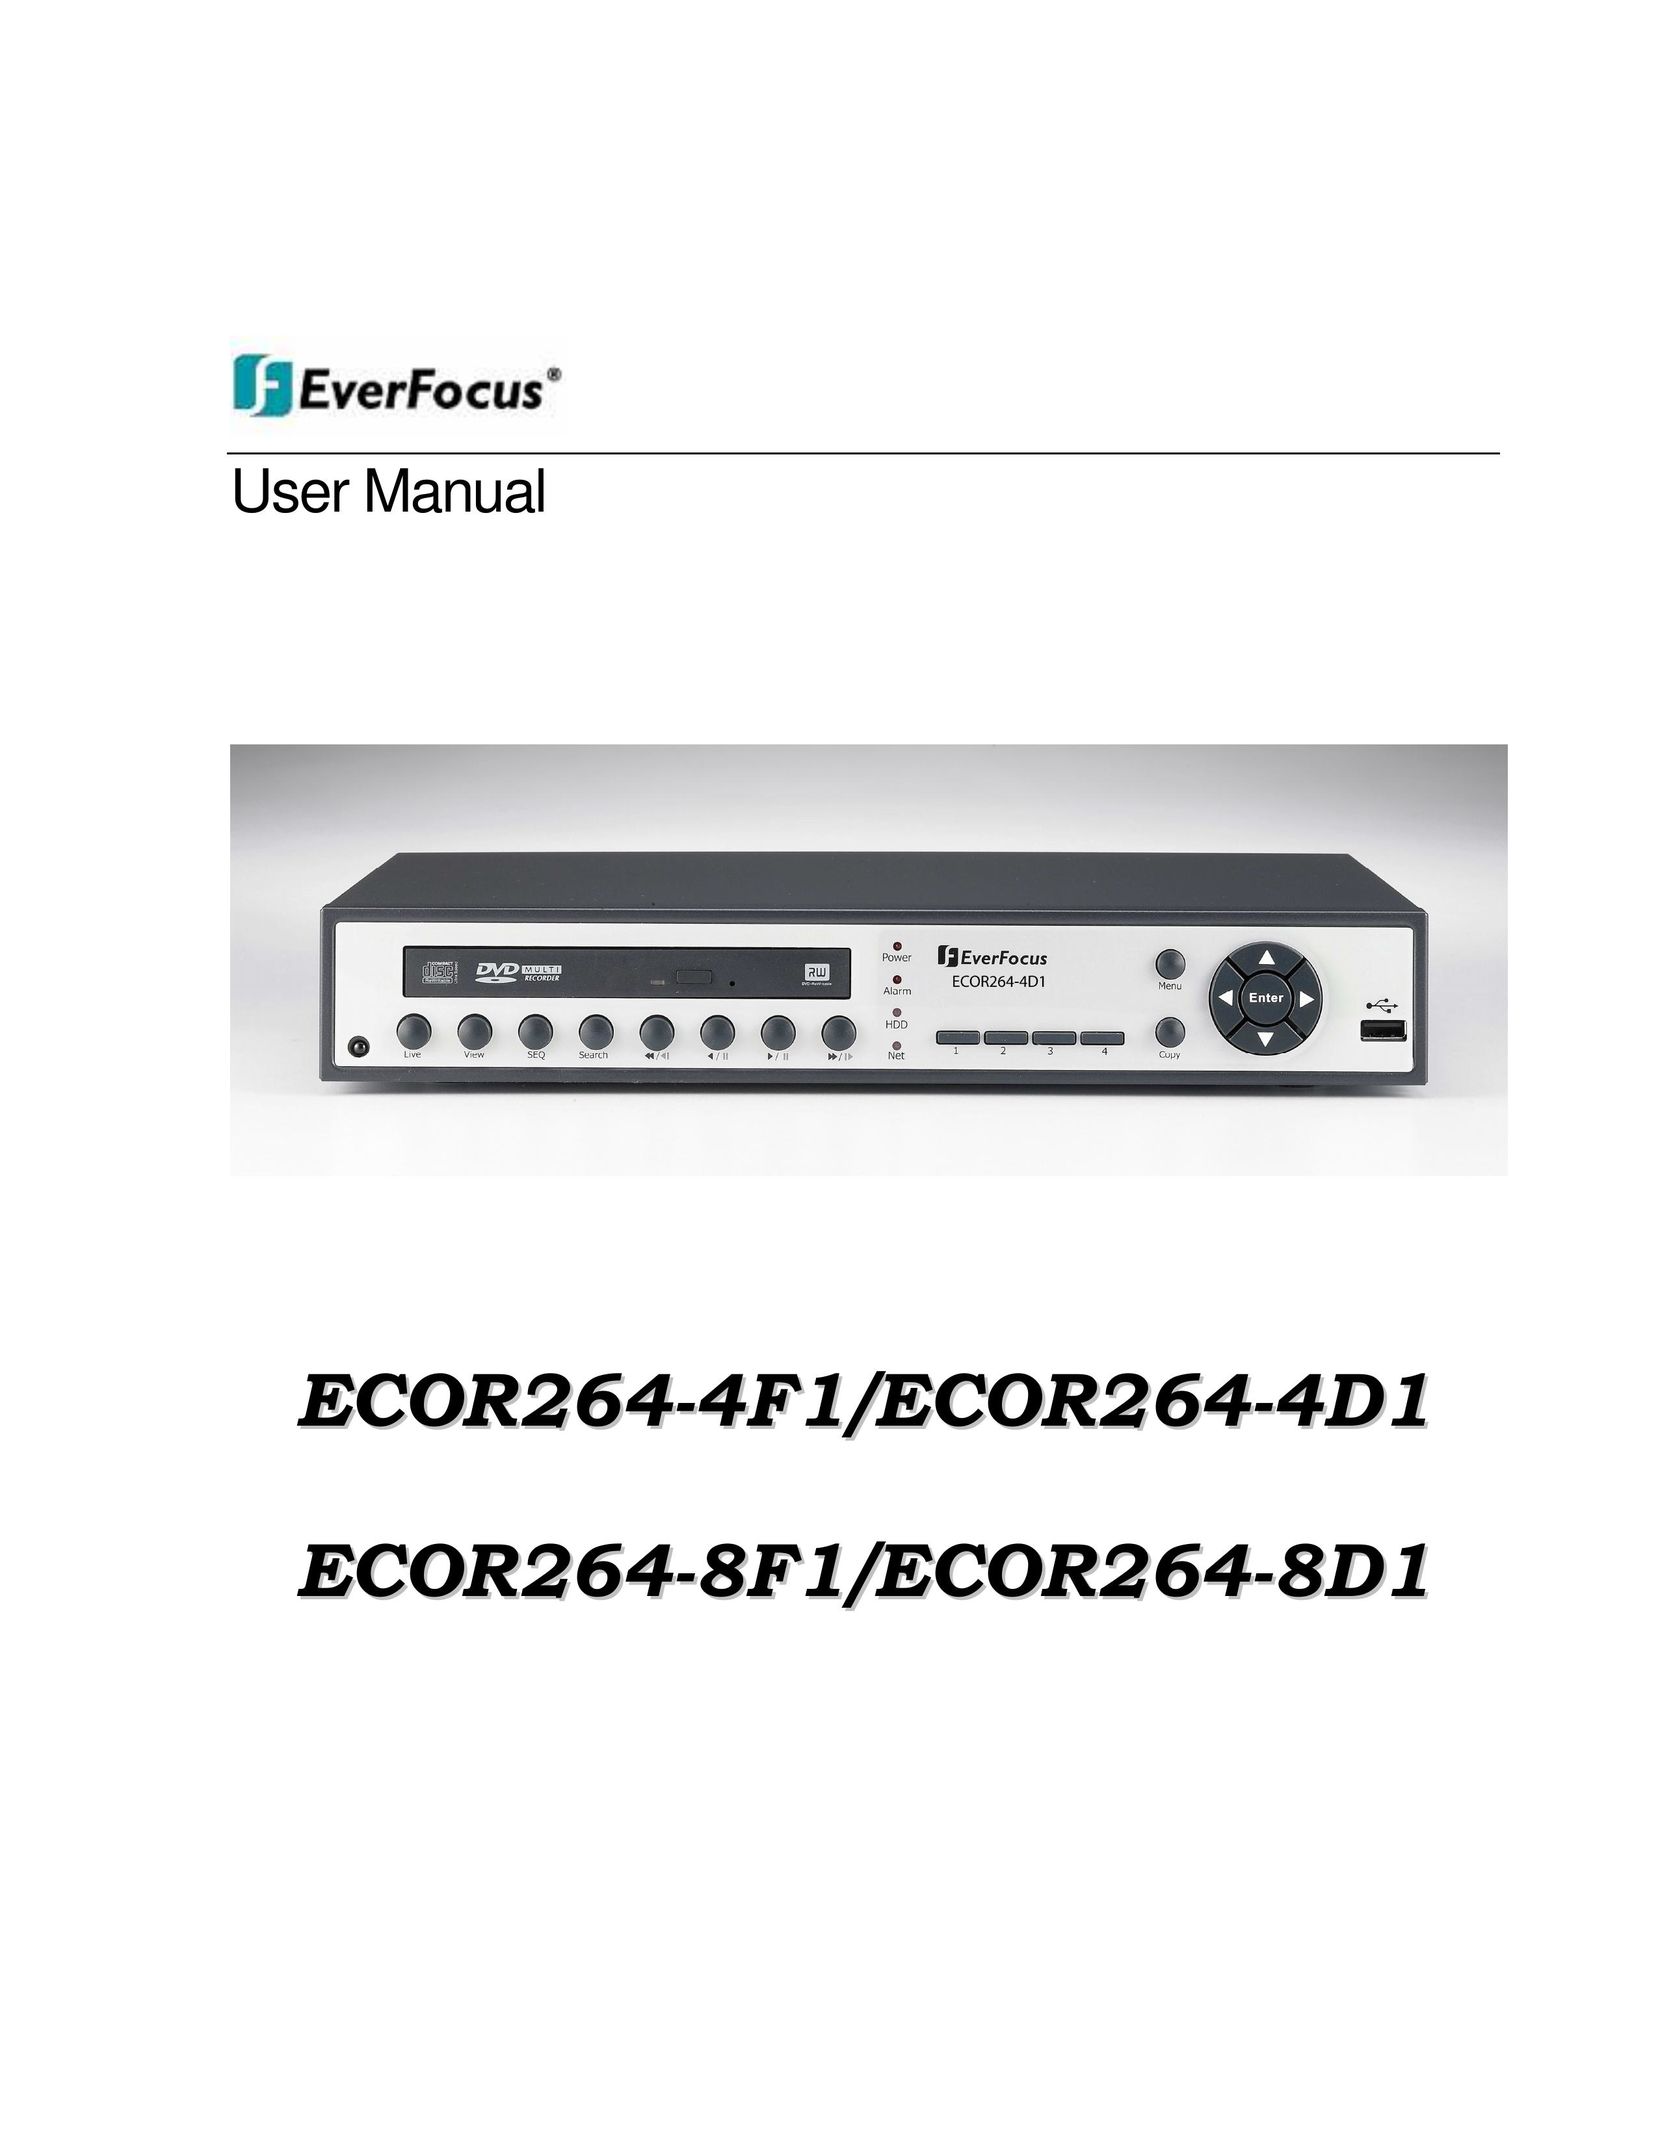 EverFocus ECOR264-4F1 DVR User Manual